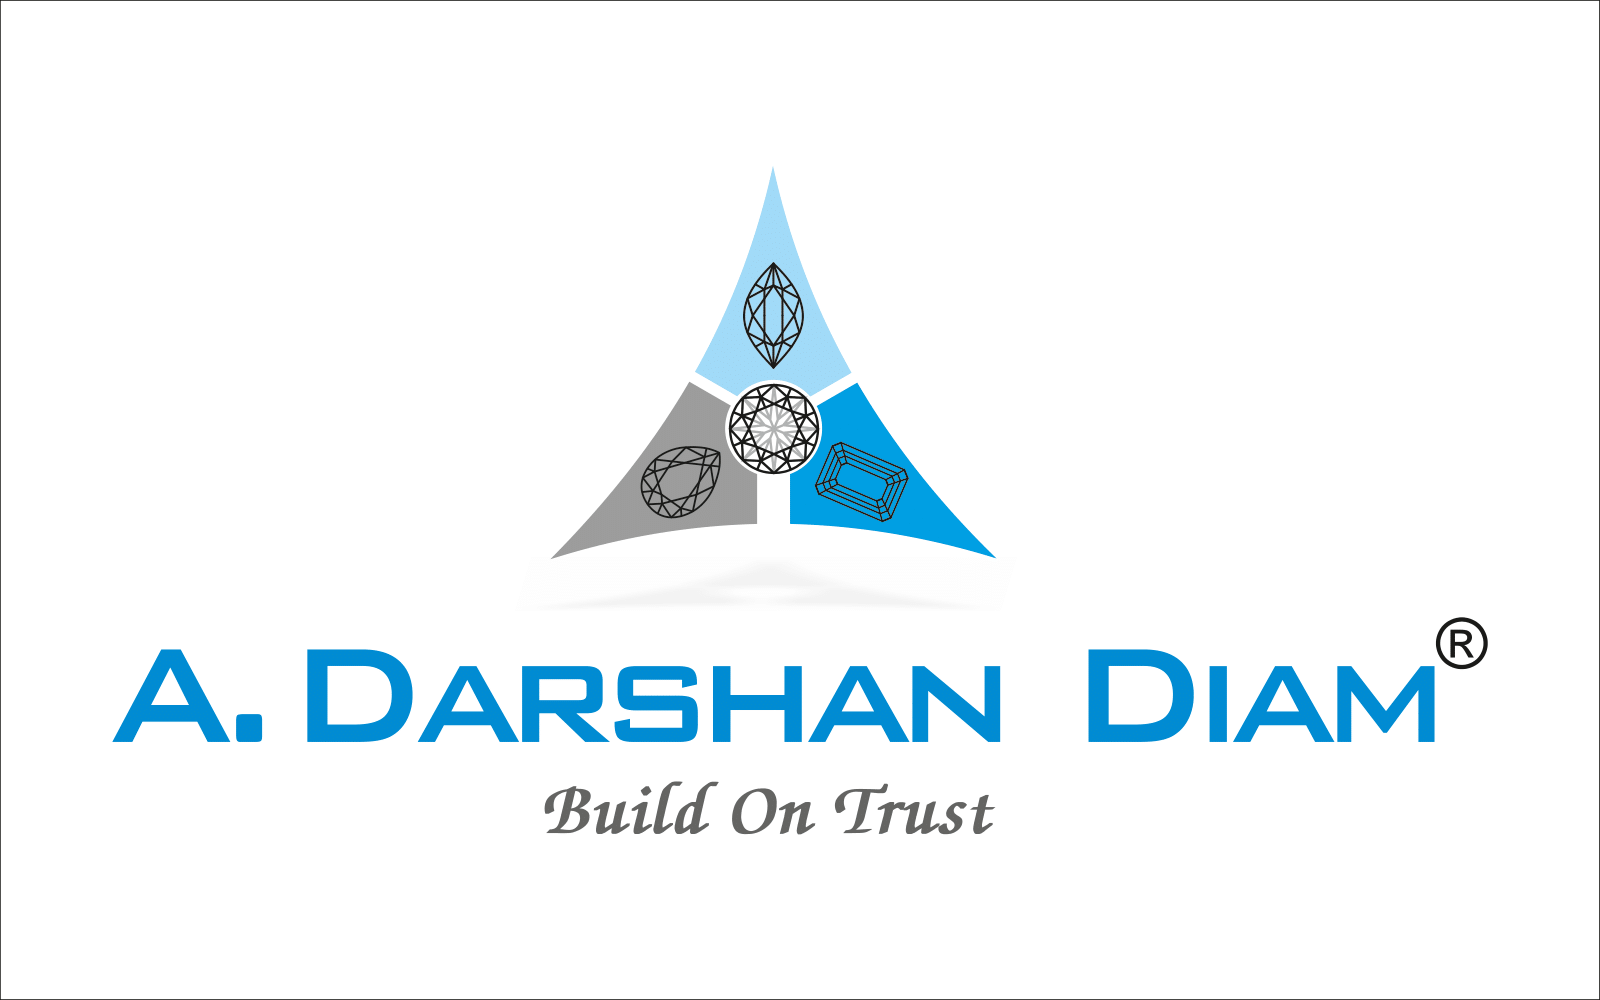 A Darshan Diam logo-1